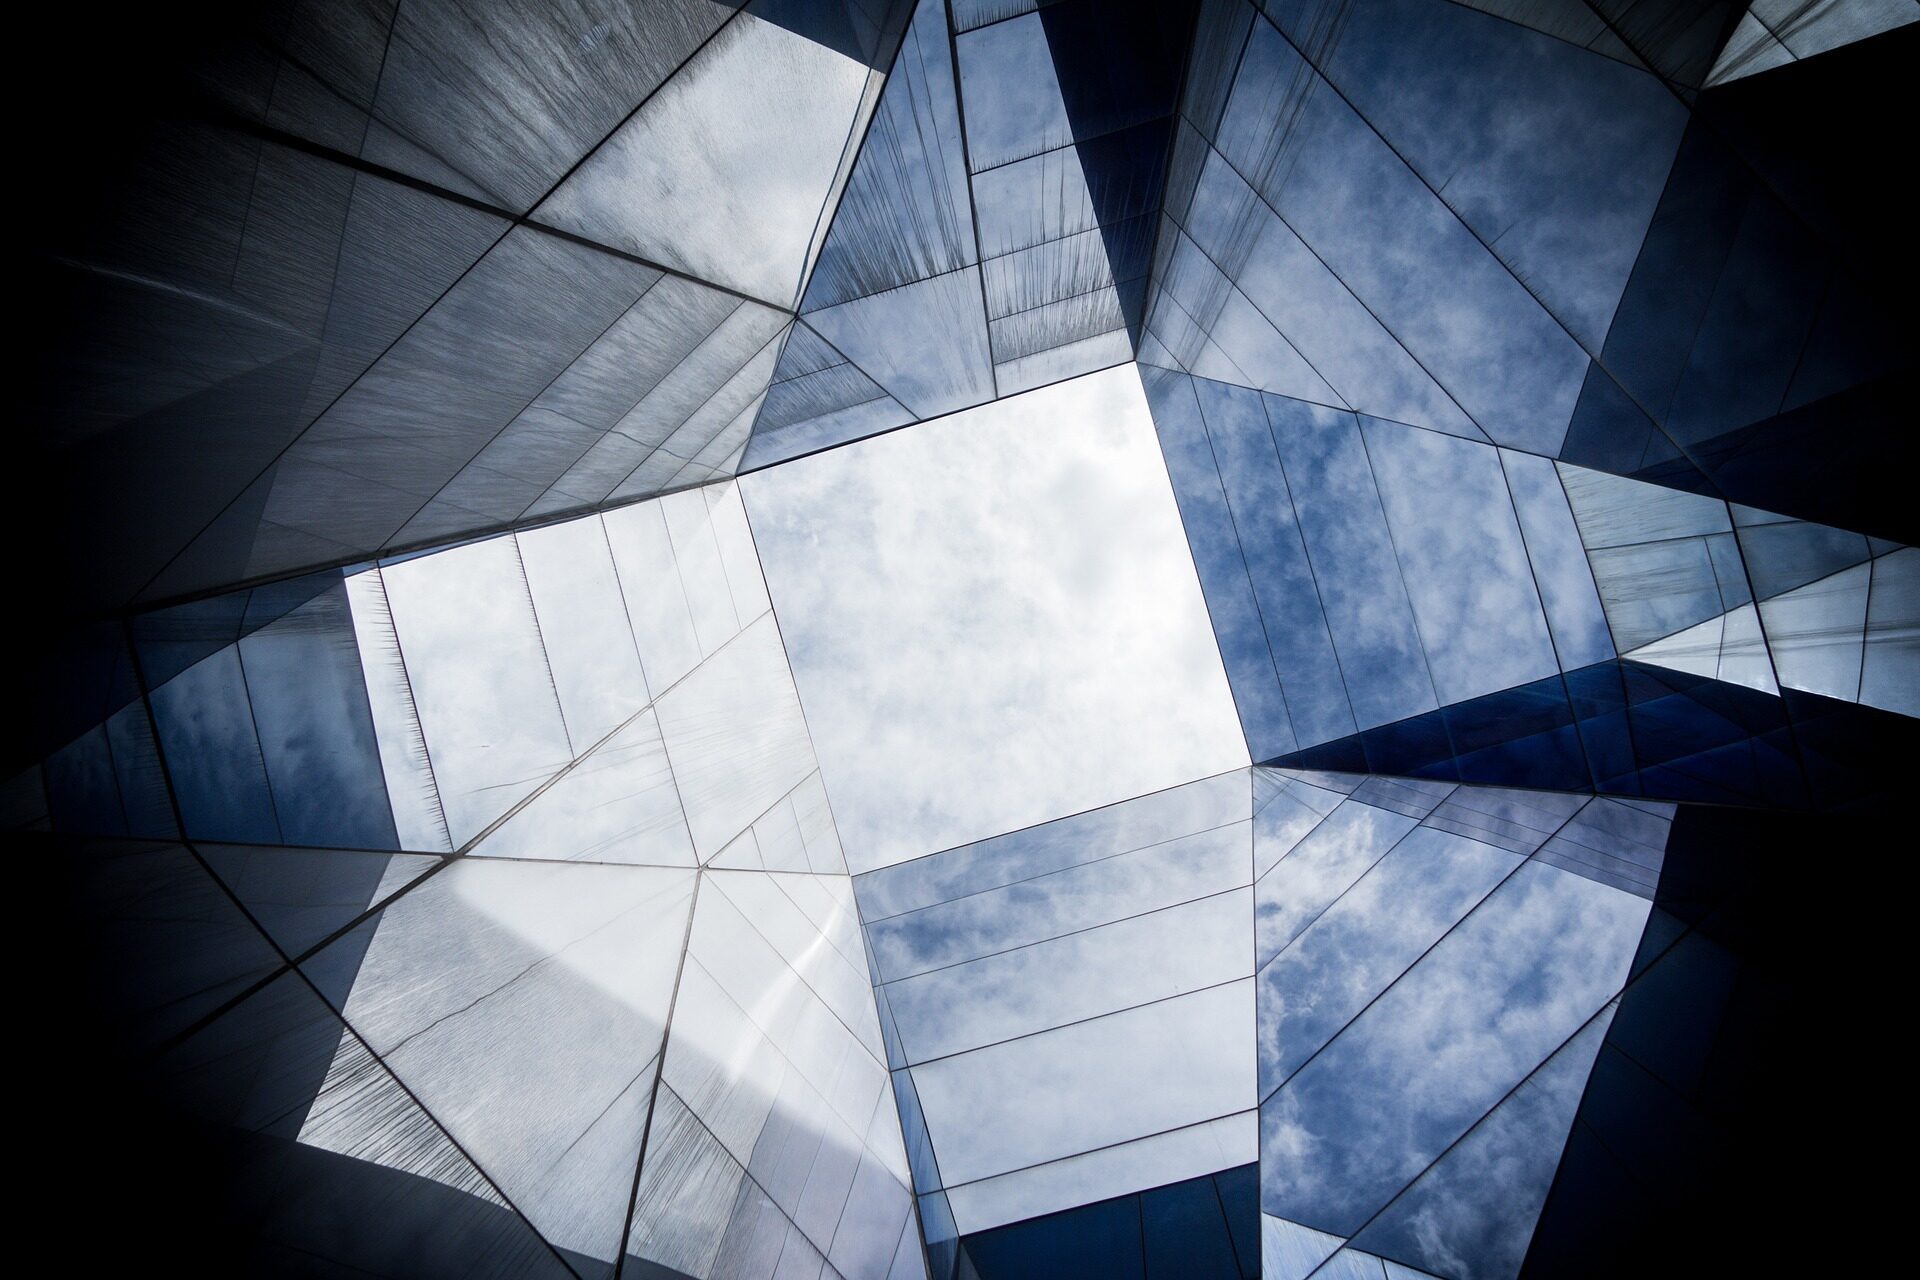 Architekturfoto zu geometrischen Dachformen aus Glas.